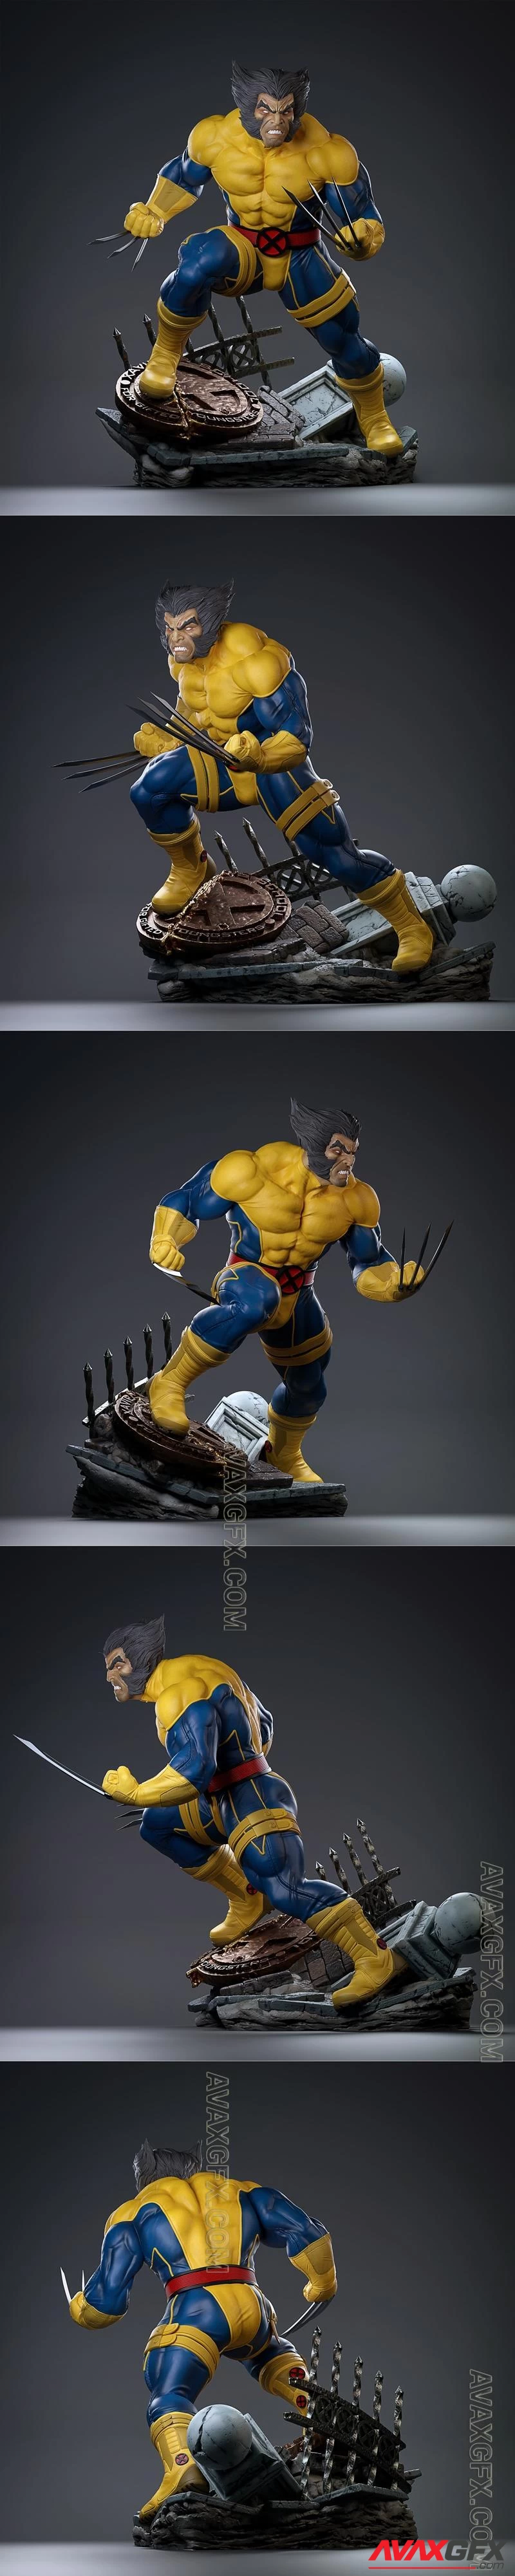 Wolverine Fan art - STL 3D Model